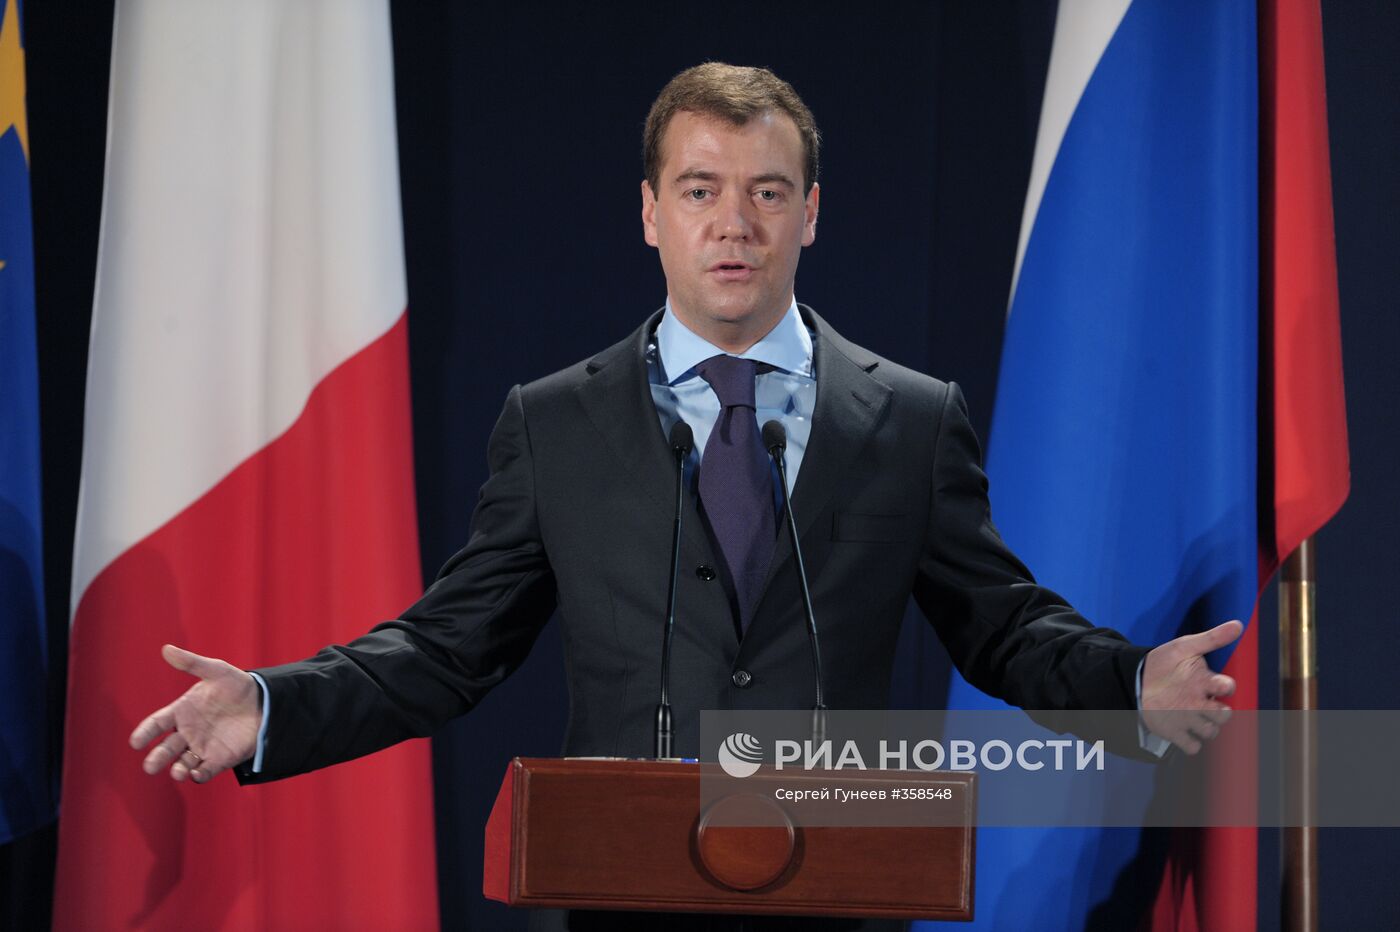 Дмитрий Медведев встретился с промышленниками РФ и ЕС